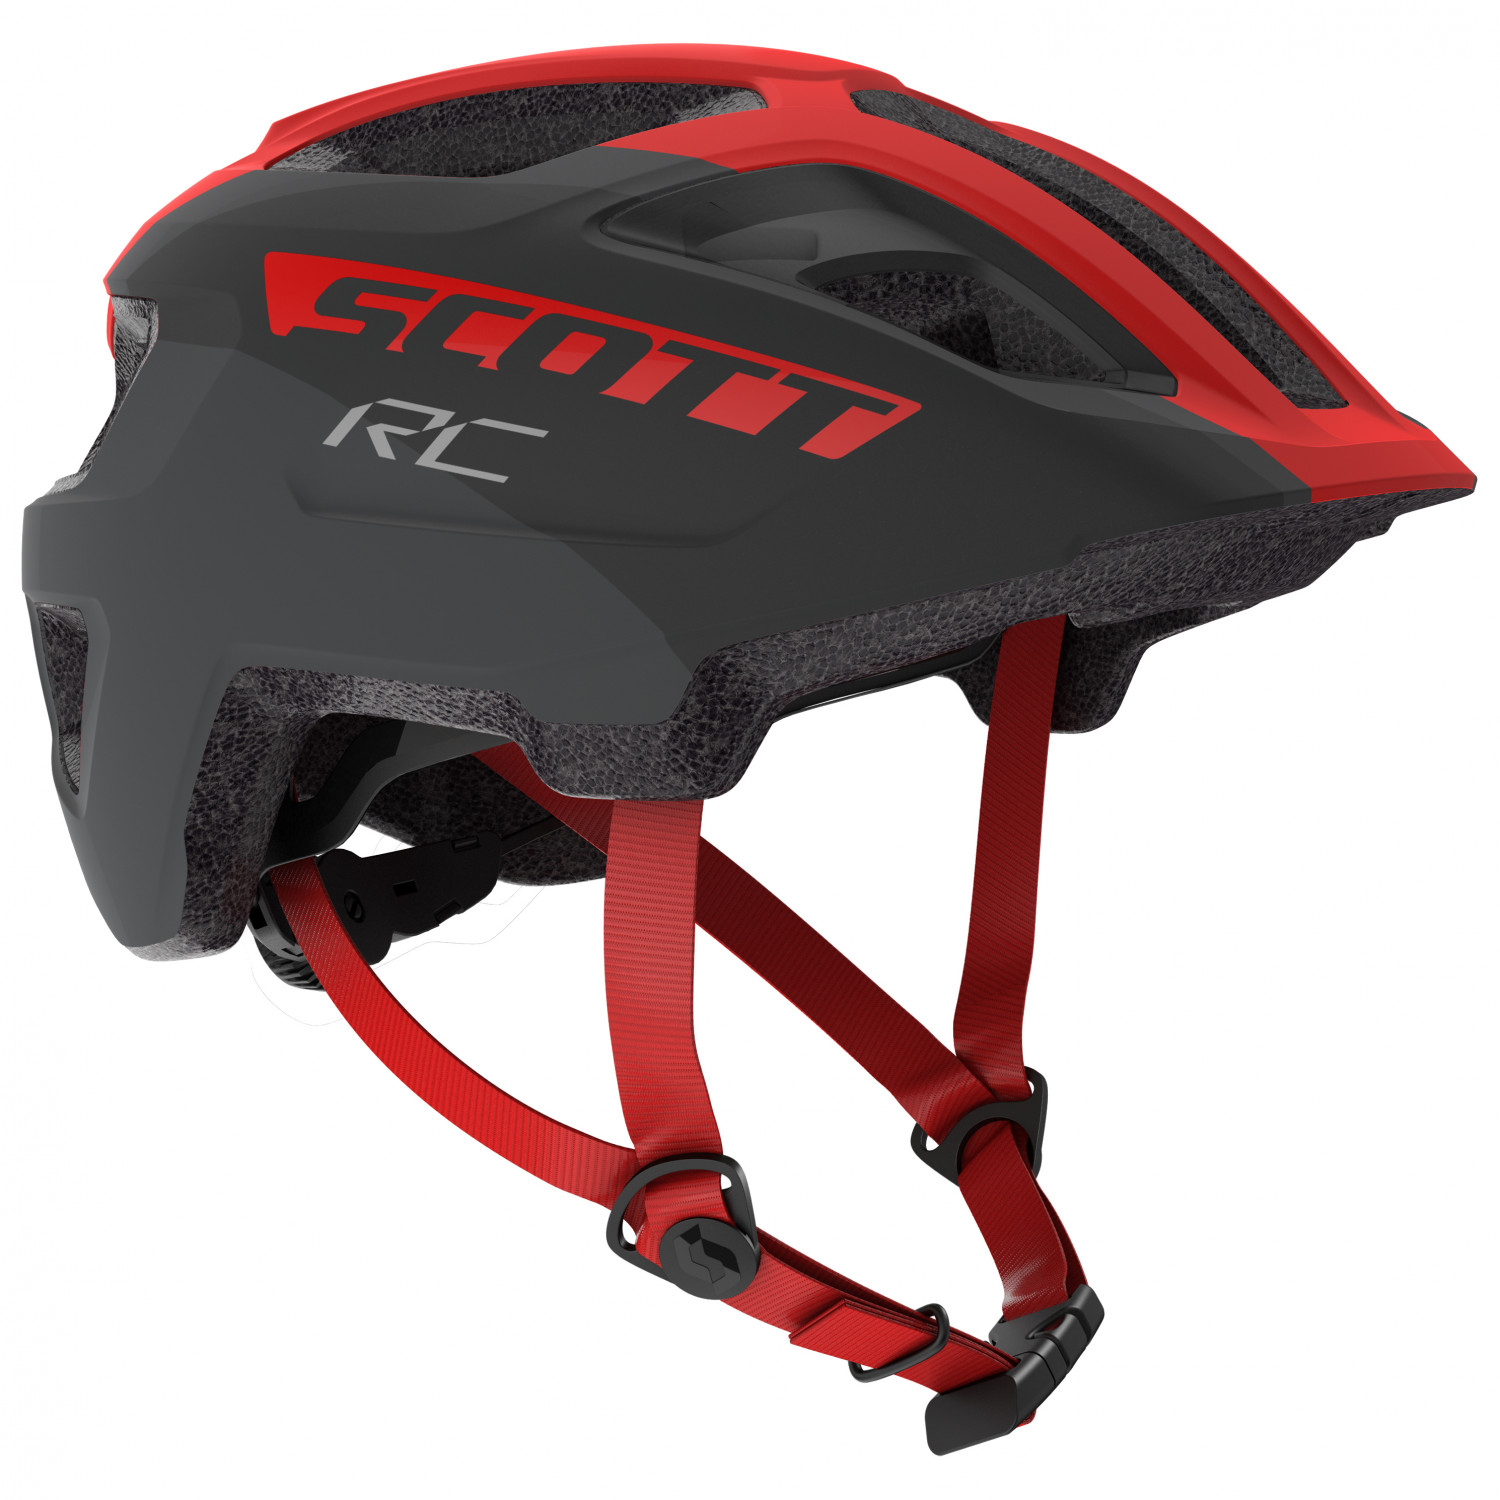 Велосипедный шлем Scott Kid's Helmet Spunto (CE) Junior, цвет Grey/Red RC шлем scott spunto kid ce atlantic blue